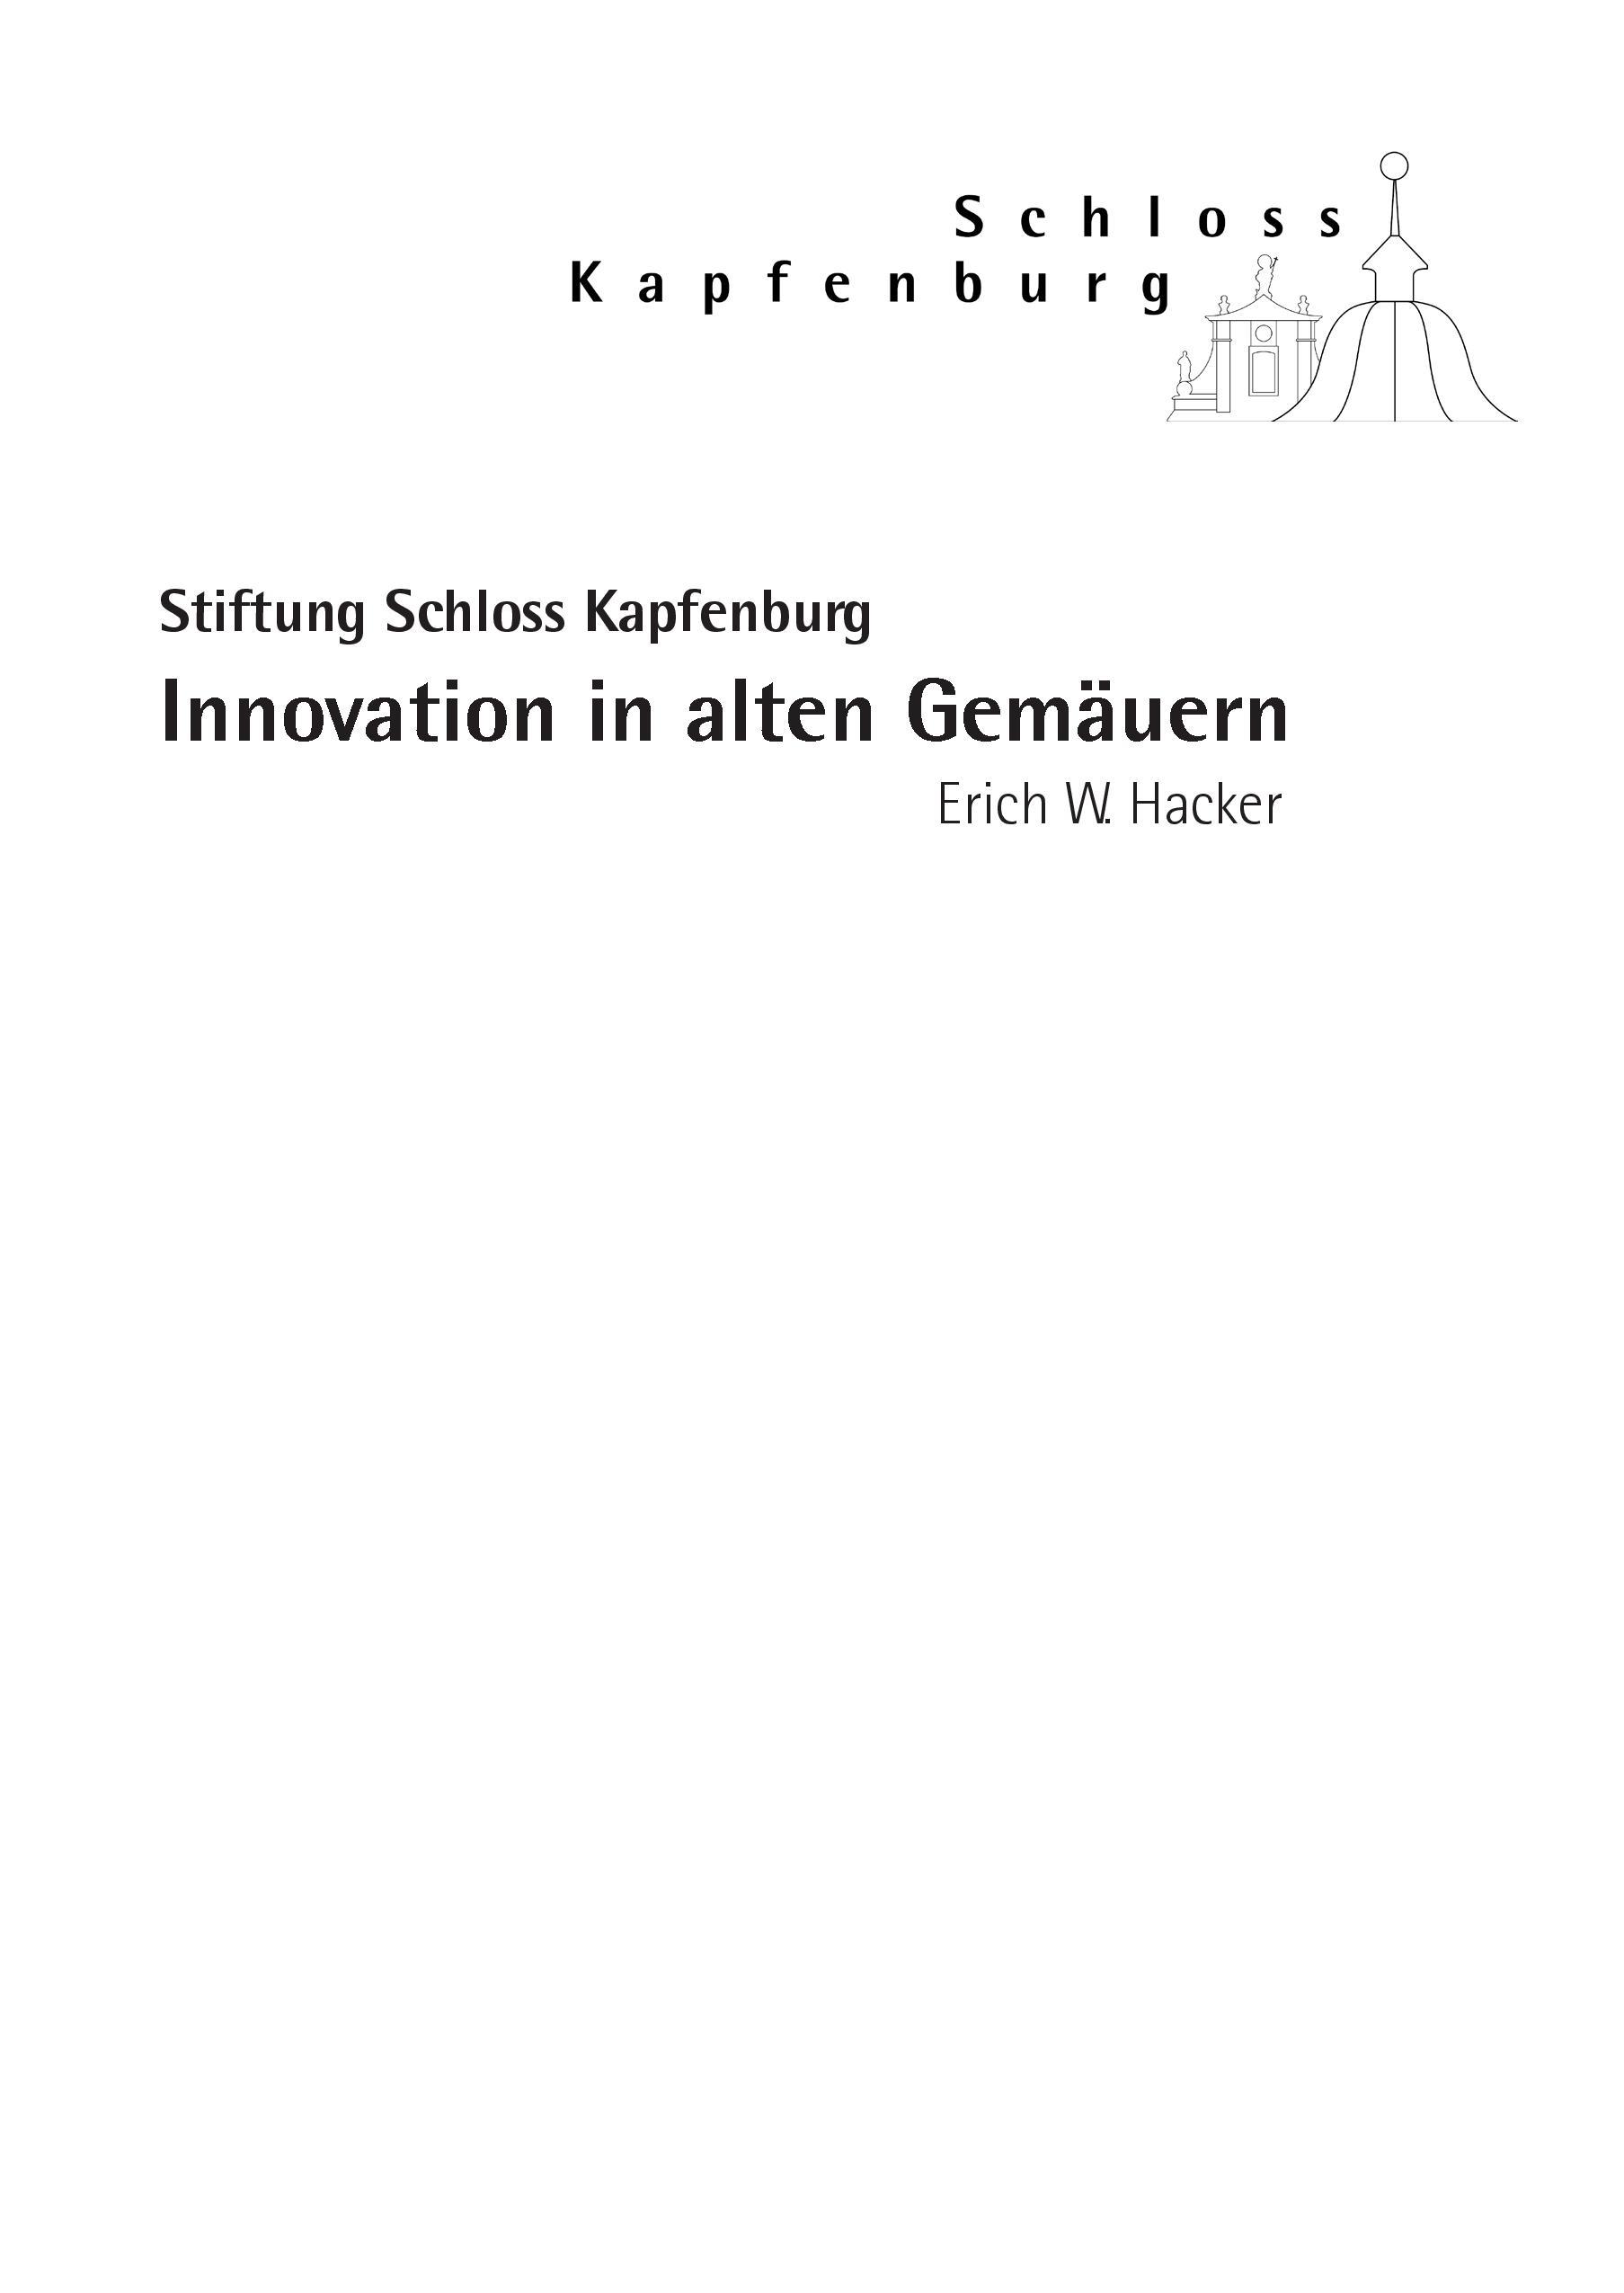 Innovation in alten Gemaeuern - Hacker, Erich W.